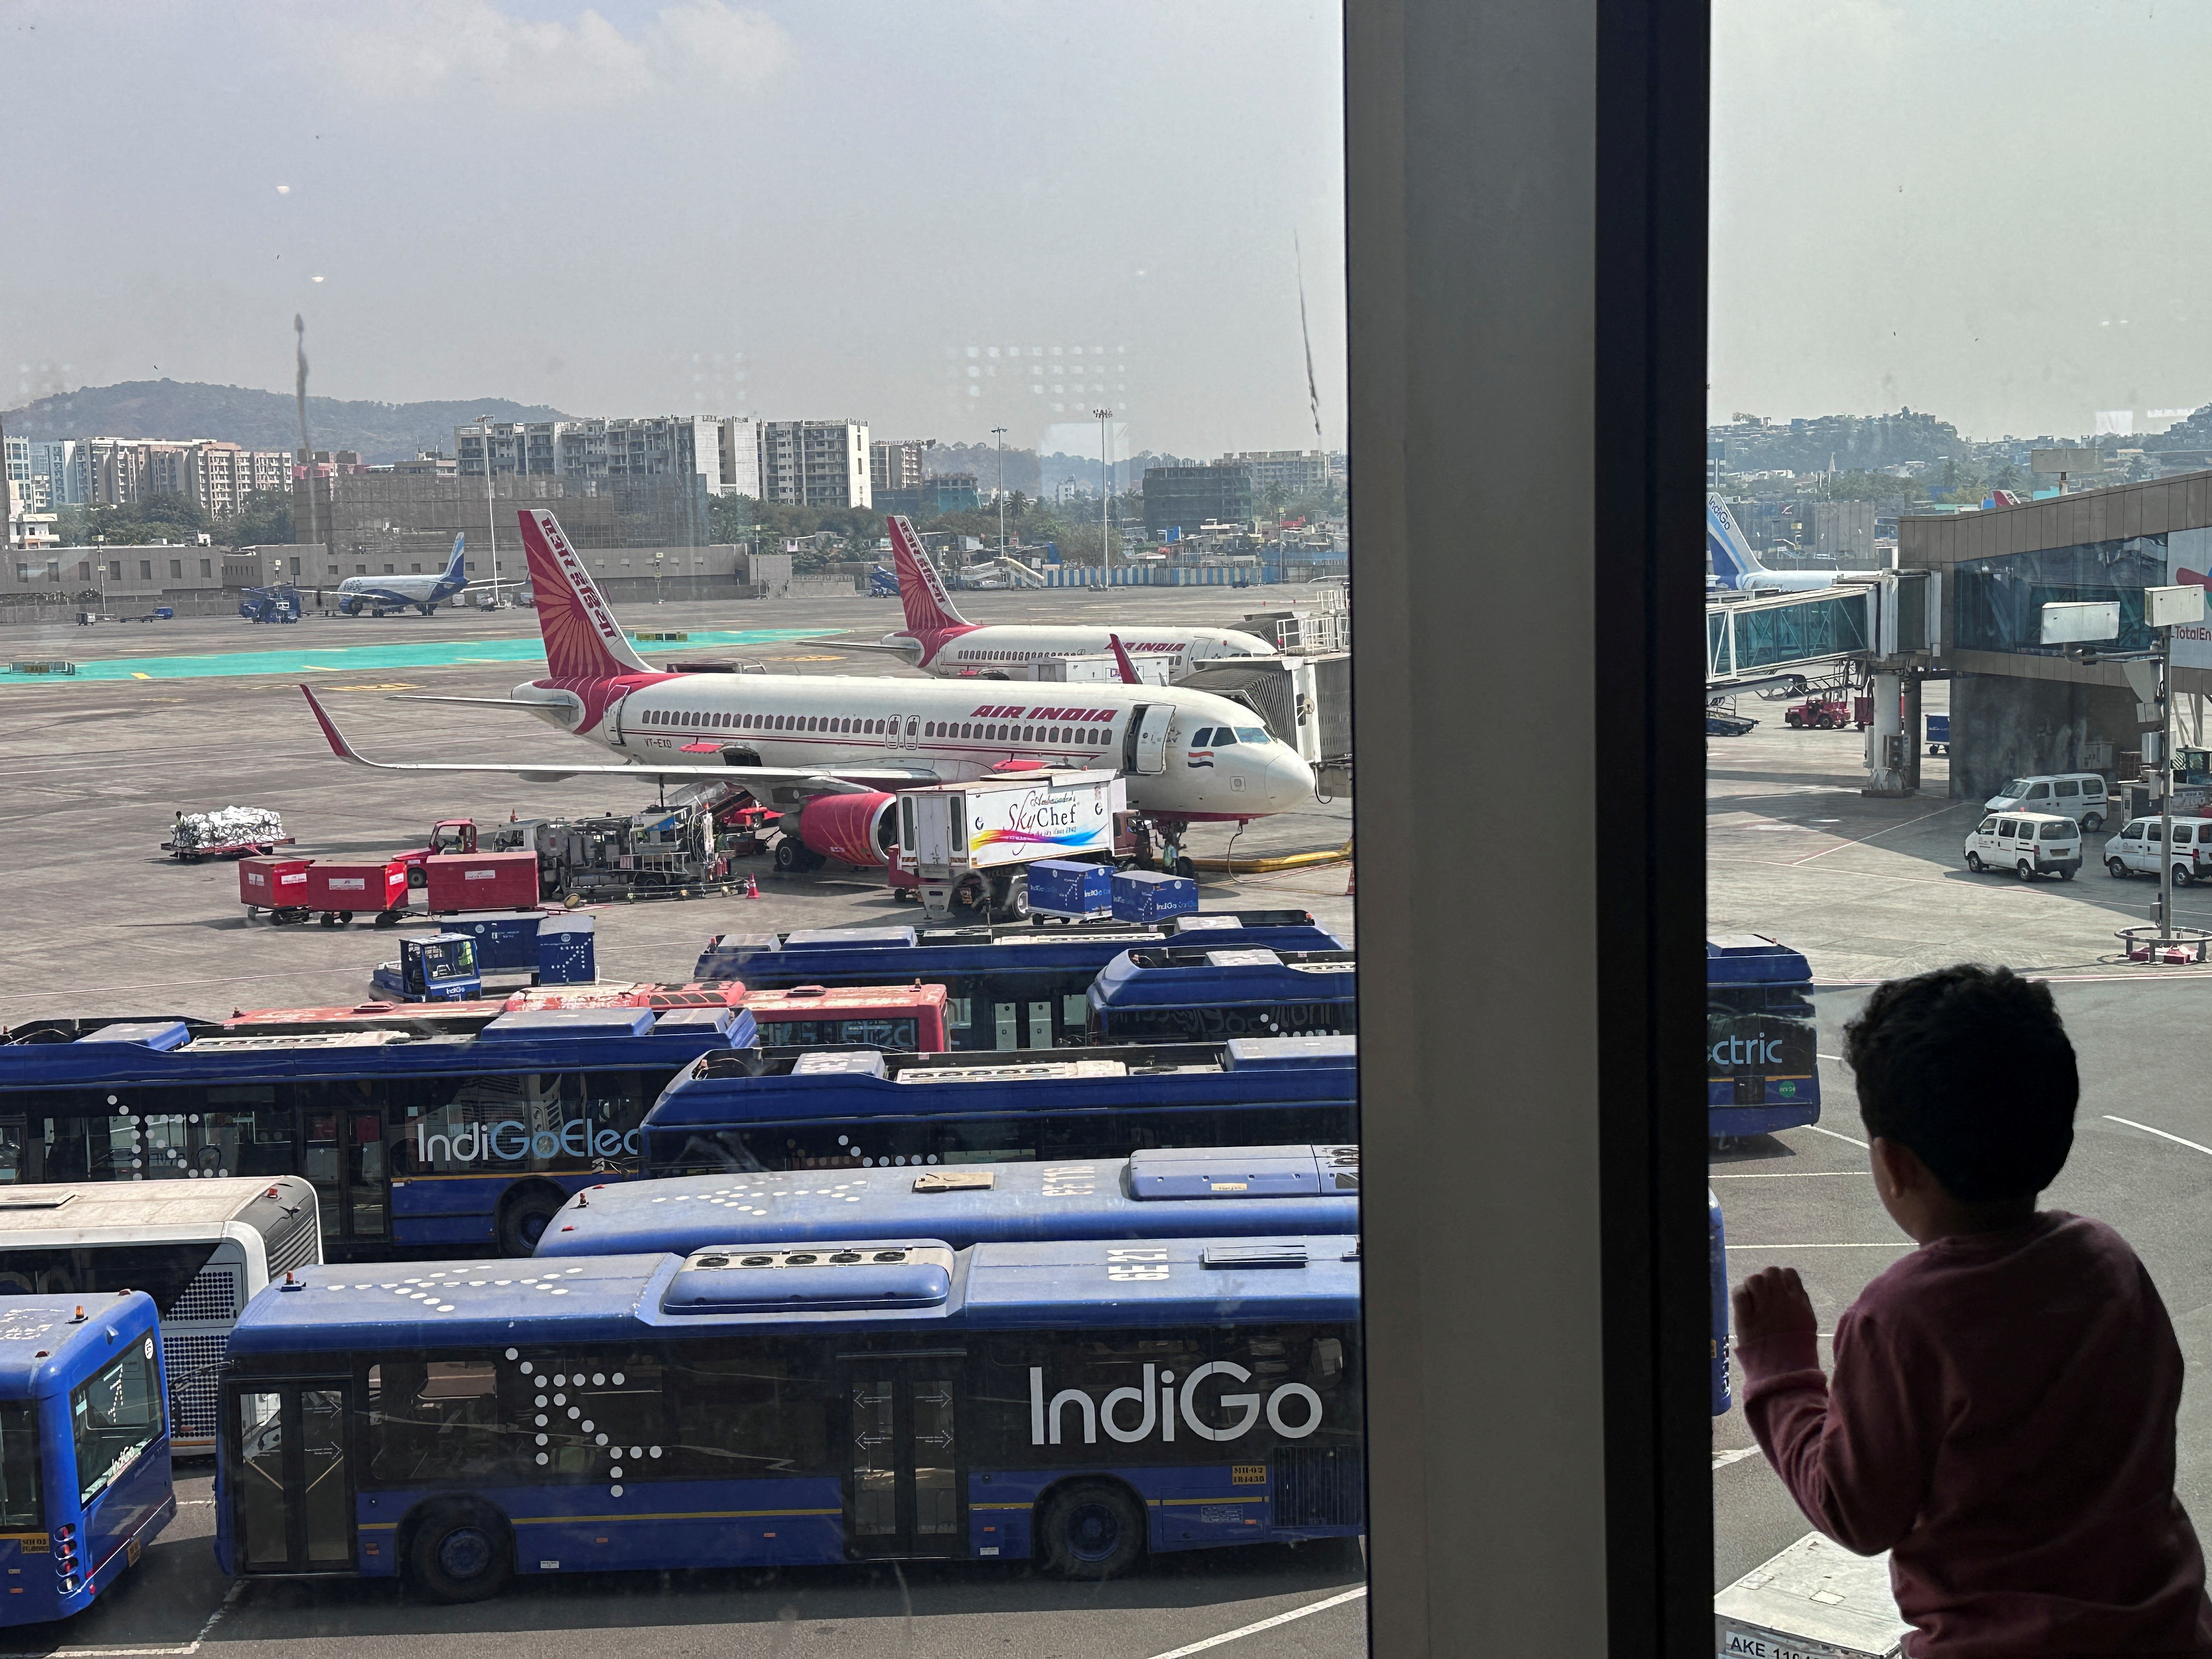 A boy looks at Air India airline passenger aircrafts parked at the Chhatrapati Shivaji Maharaj International Airport in Mumbai